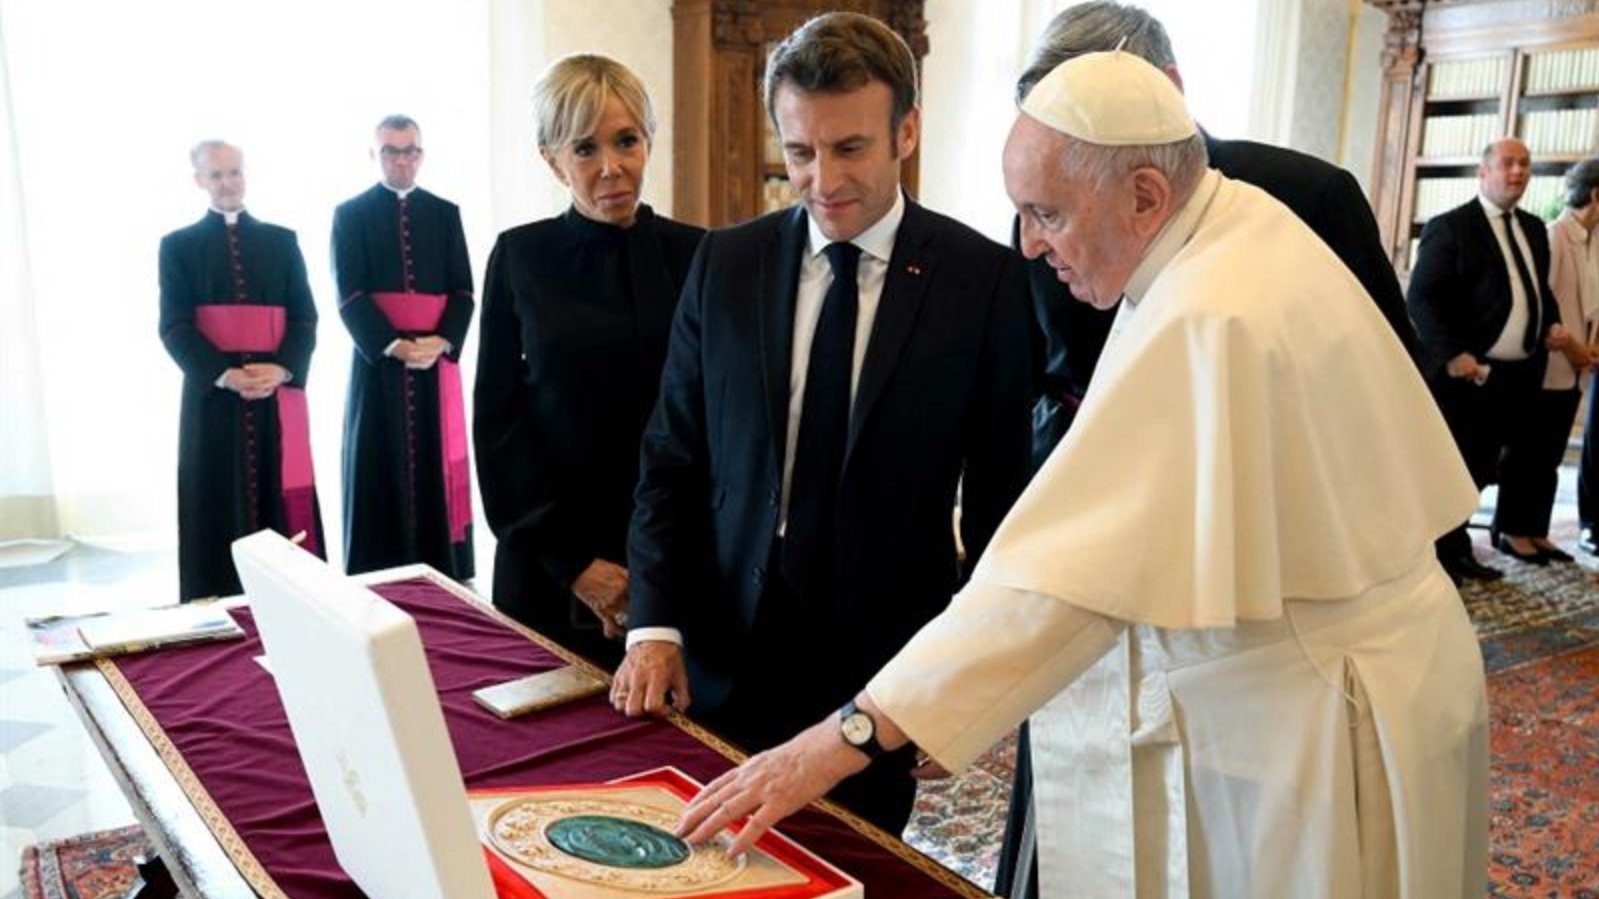 البابا فرانسيس (إلى اليمين) يتبادل الهدايا مع الرئيس الفرنسي إيمانويل ماكرون (وسط) وزوجته بريجيت ماكرون (إلى اليسار) خلال لقاء خاص في الفاتيكان، في 24 أكتوبر 2022